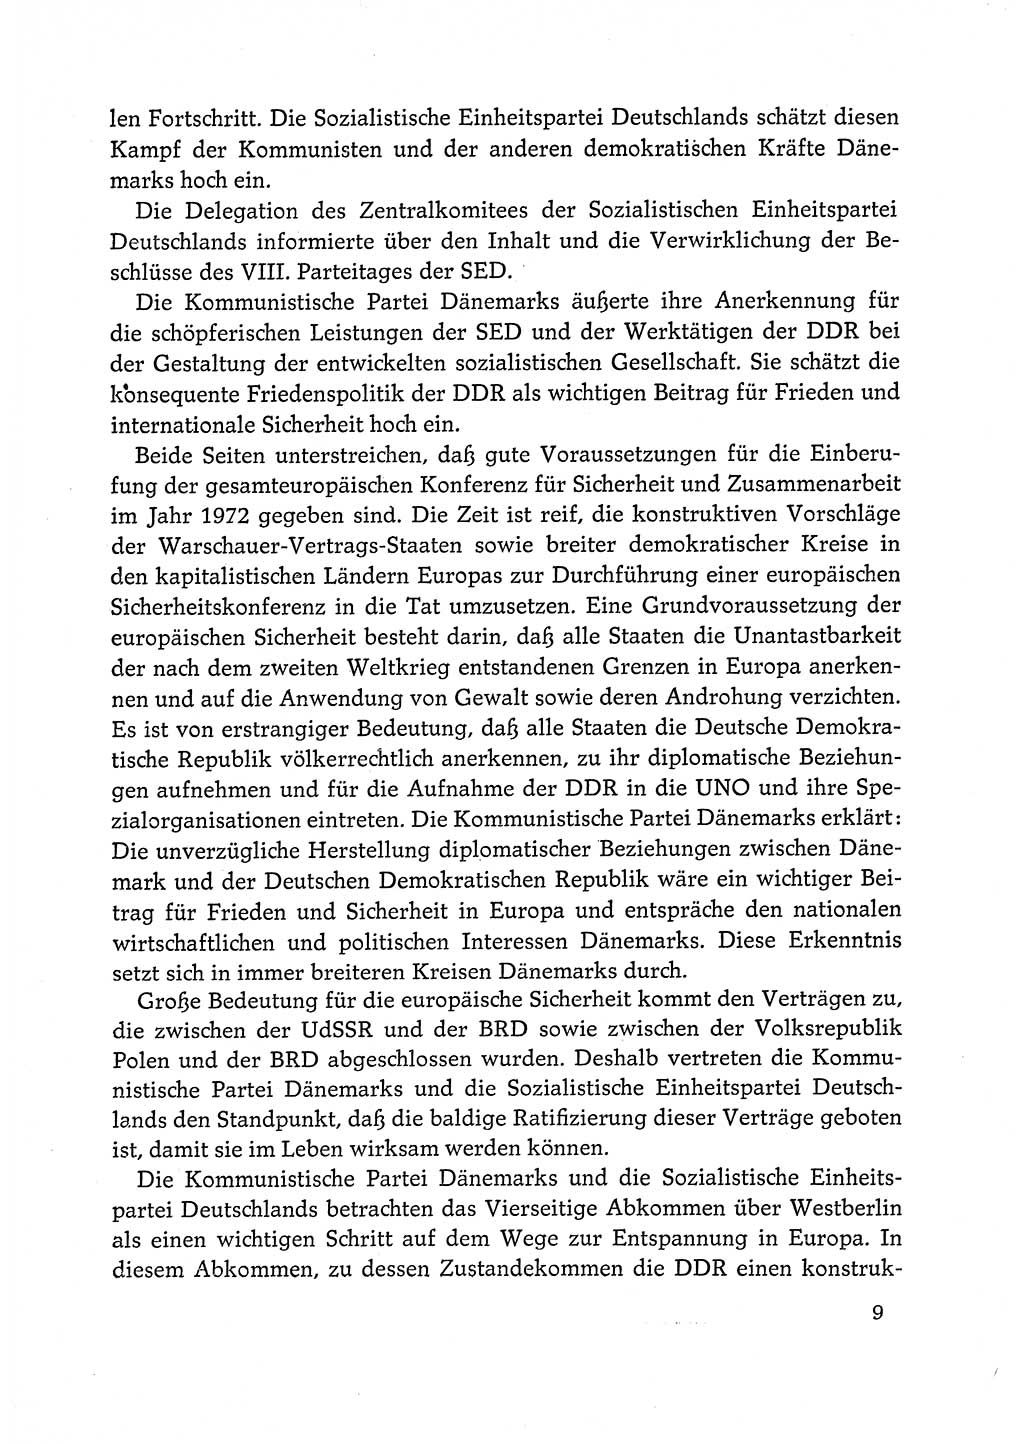 Dokumente der Sozialistischen Einheitspartei Deutschlands (SED) [Deutsche Demokratische Republik (DDR)] 1972-1973, Seite 9 (Dok. SED DDR 1972-1973, S. 9)